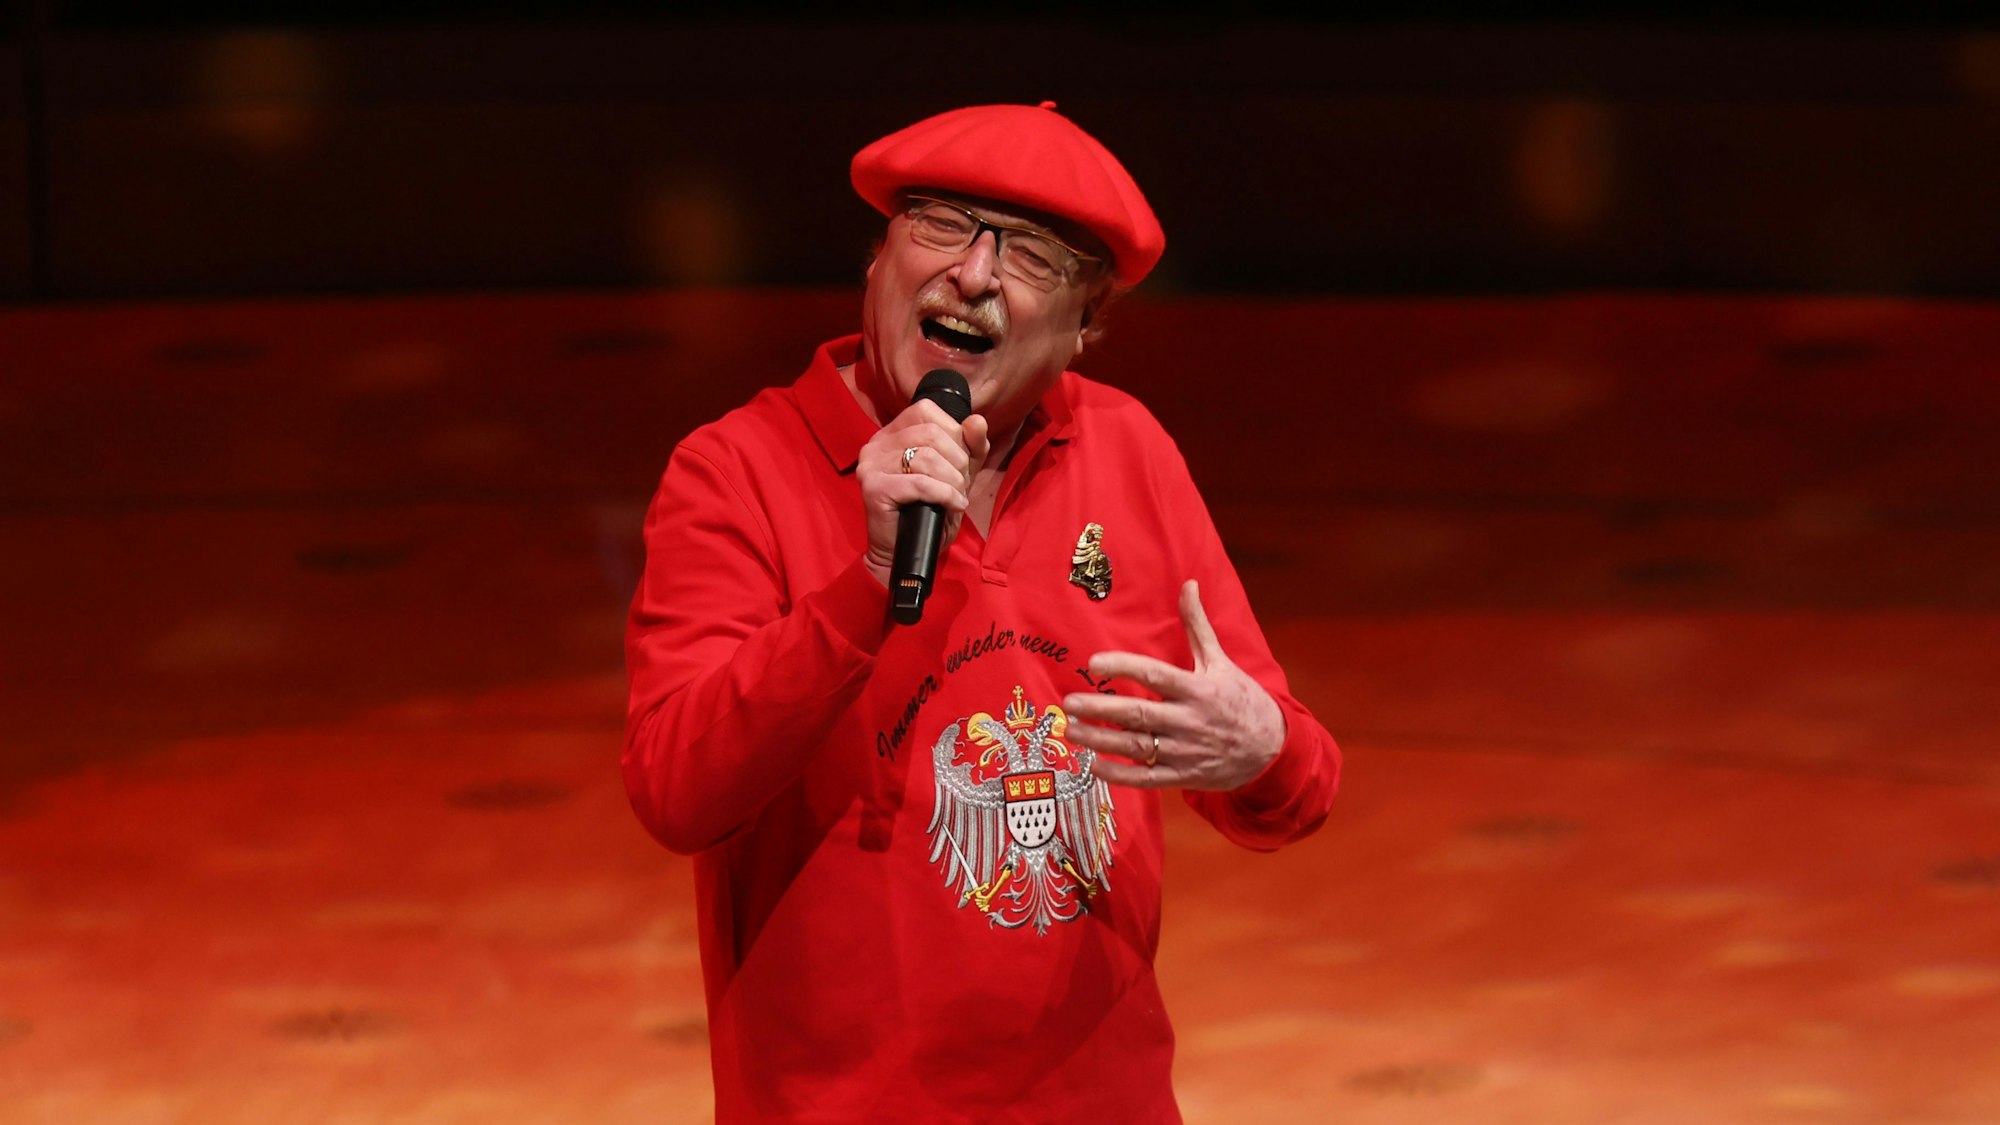 Wicky Junggeburth steht mit einem Mikro in der Hand auf der Bühne der Philharmonie Köln, er trägt einen roten Pulli mit dem Kölner Wappen drauf und eine rote Mütze.